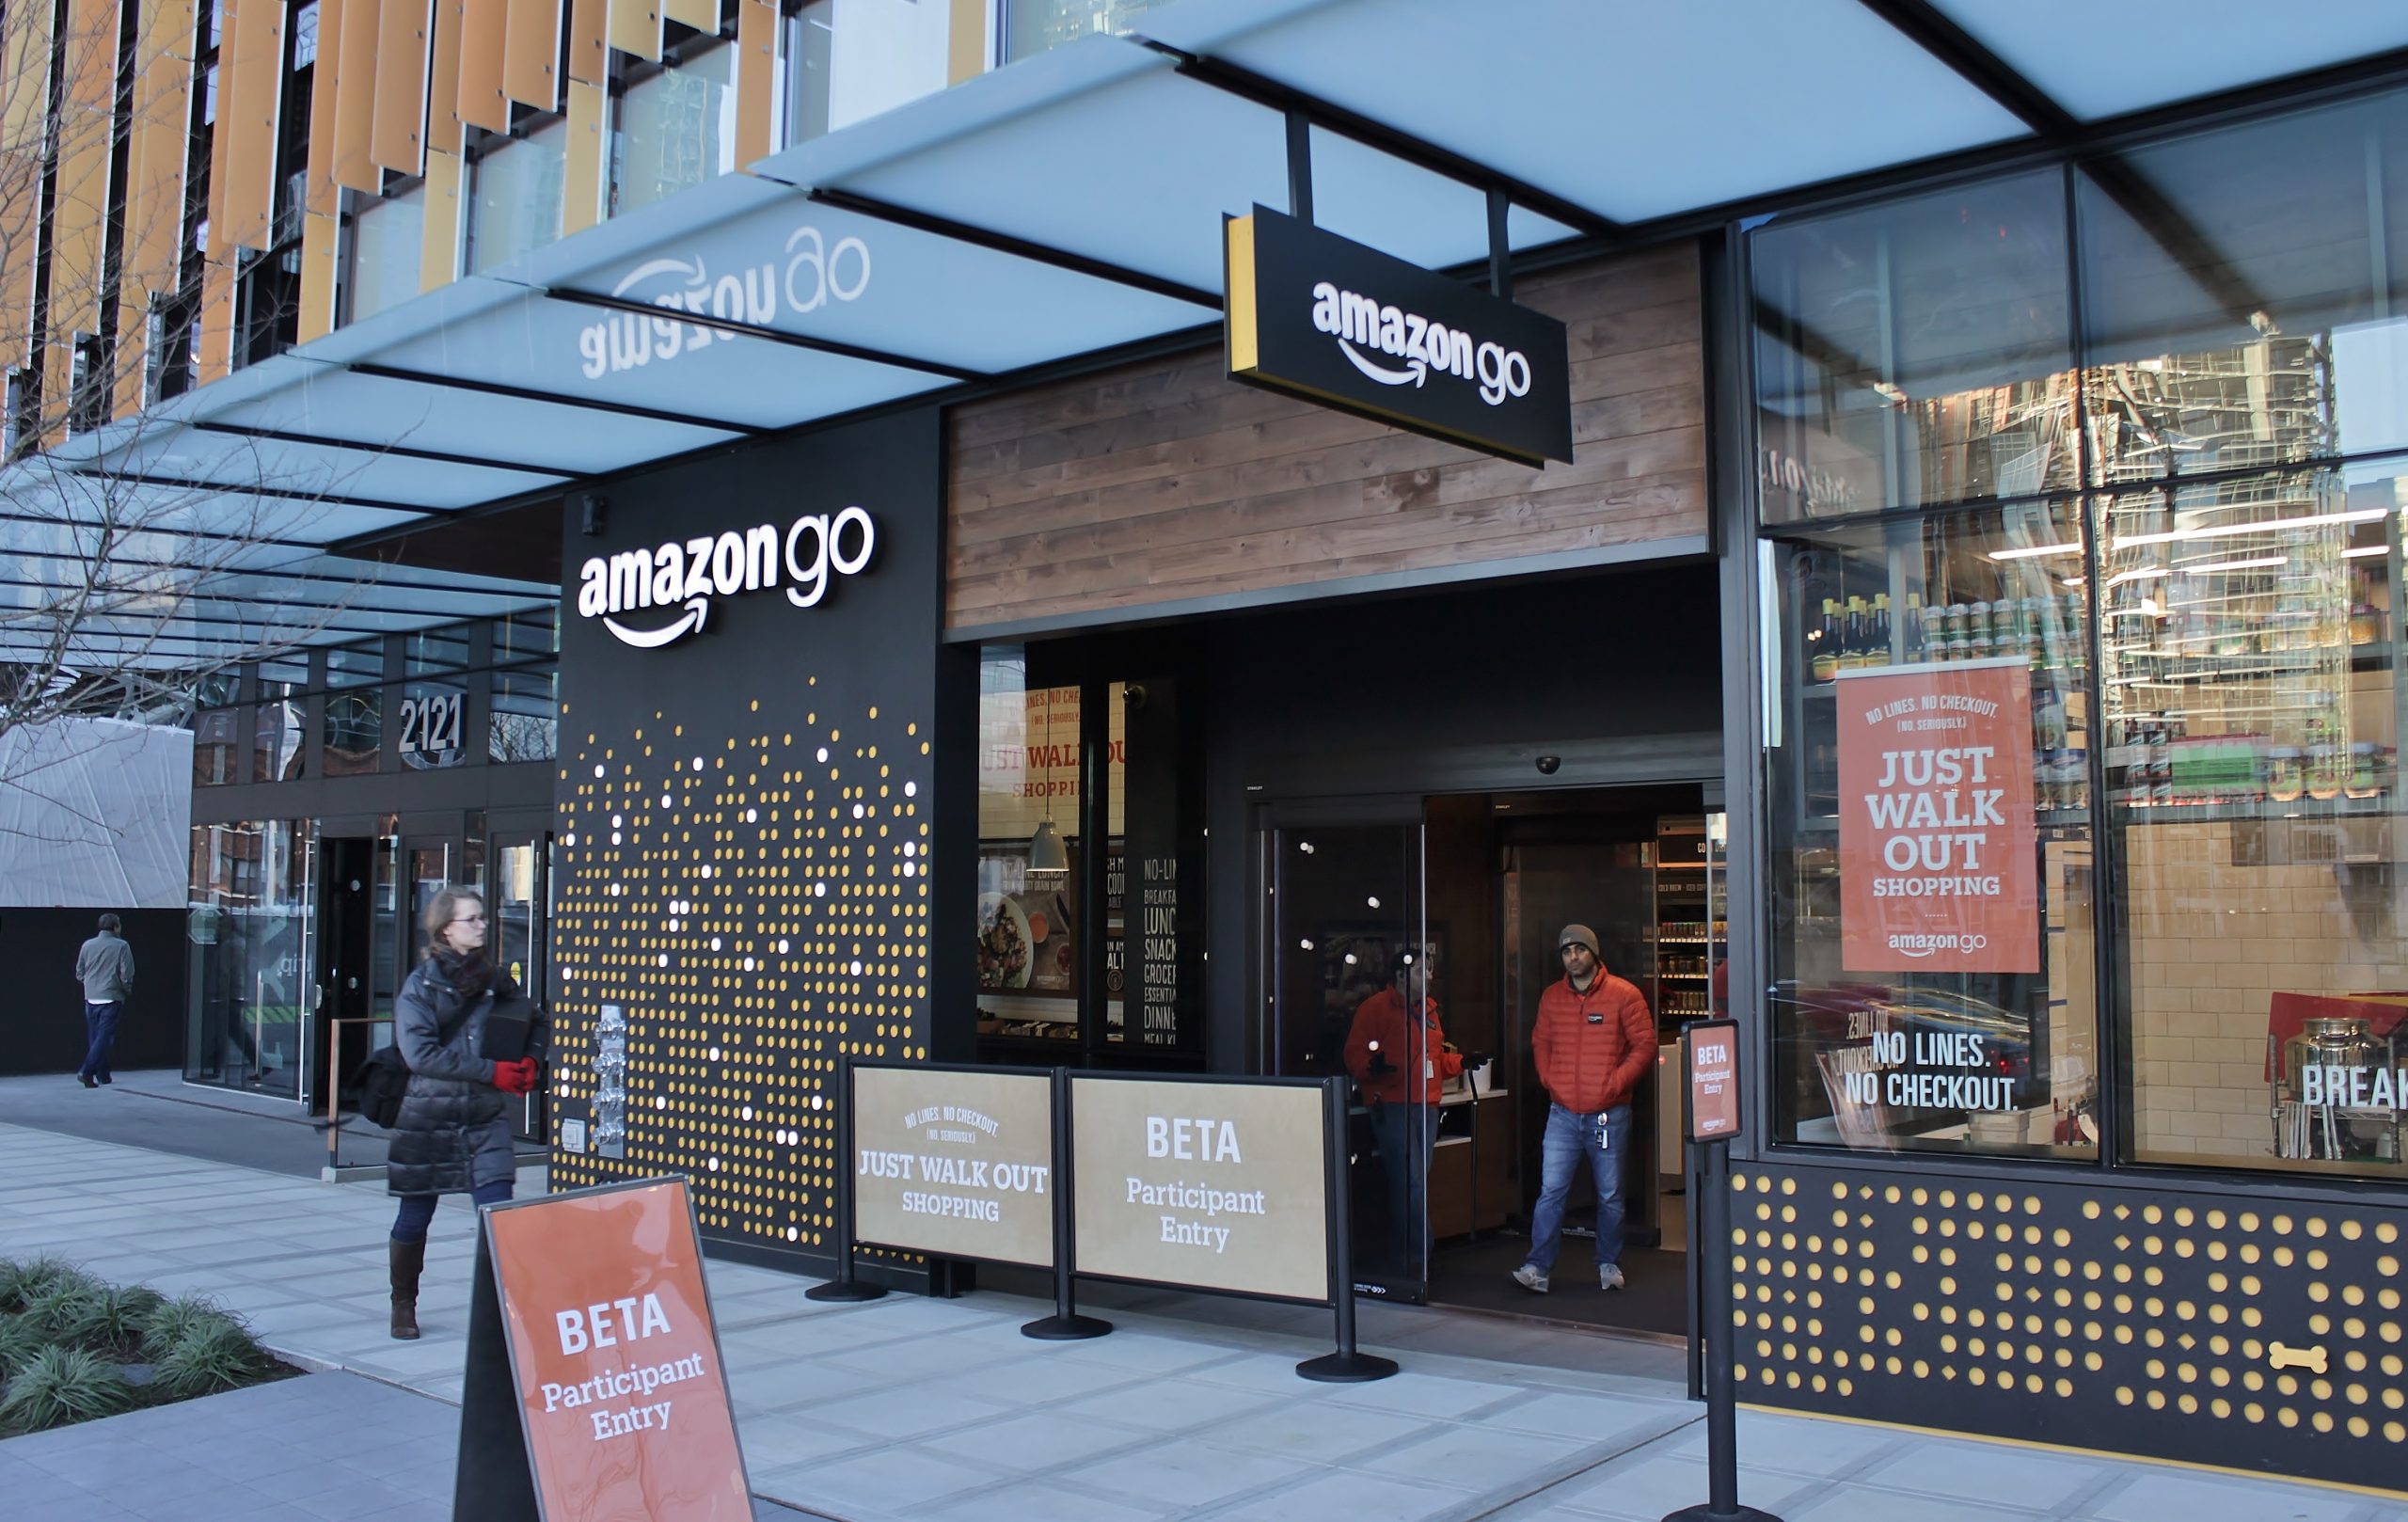 Exterior photo of the Amazon Go prototype grocery store.